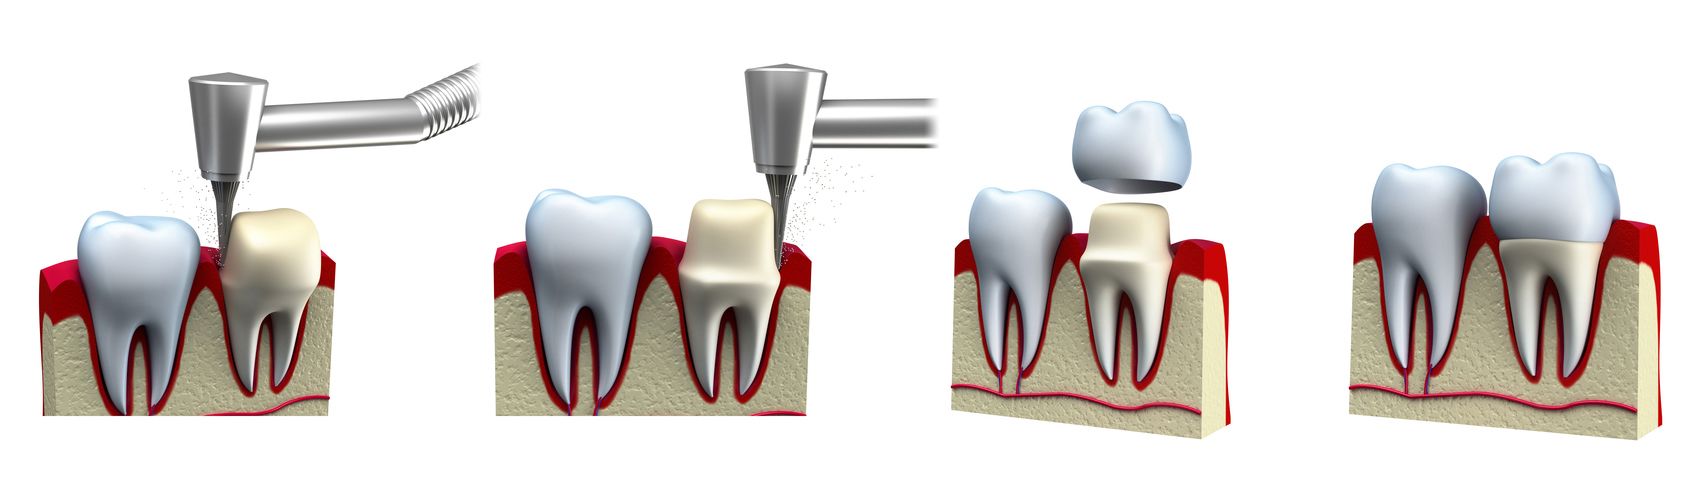 Bọc răng sứ cần phải mài răng để tạo cùi từ răng thật